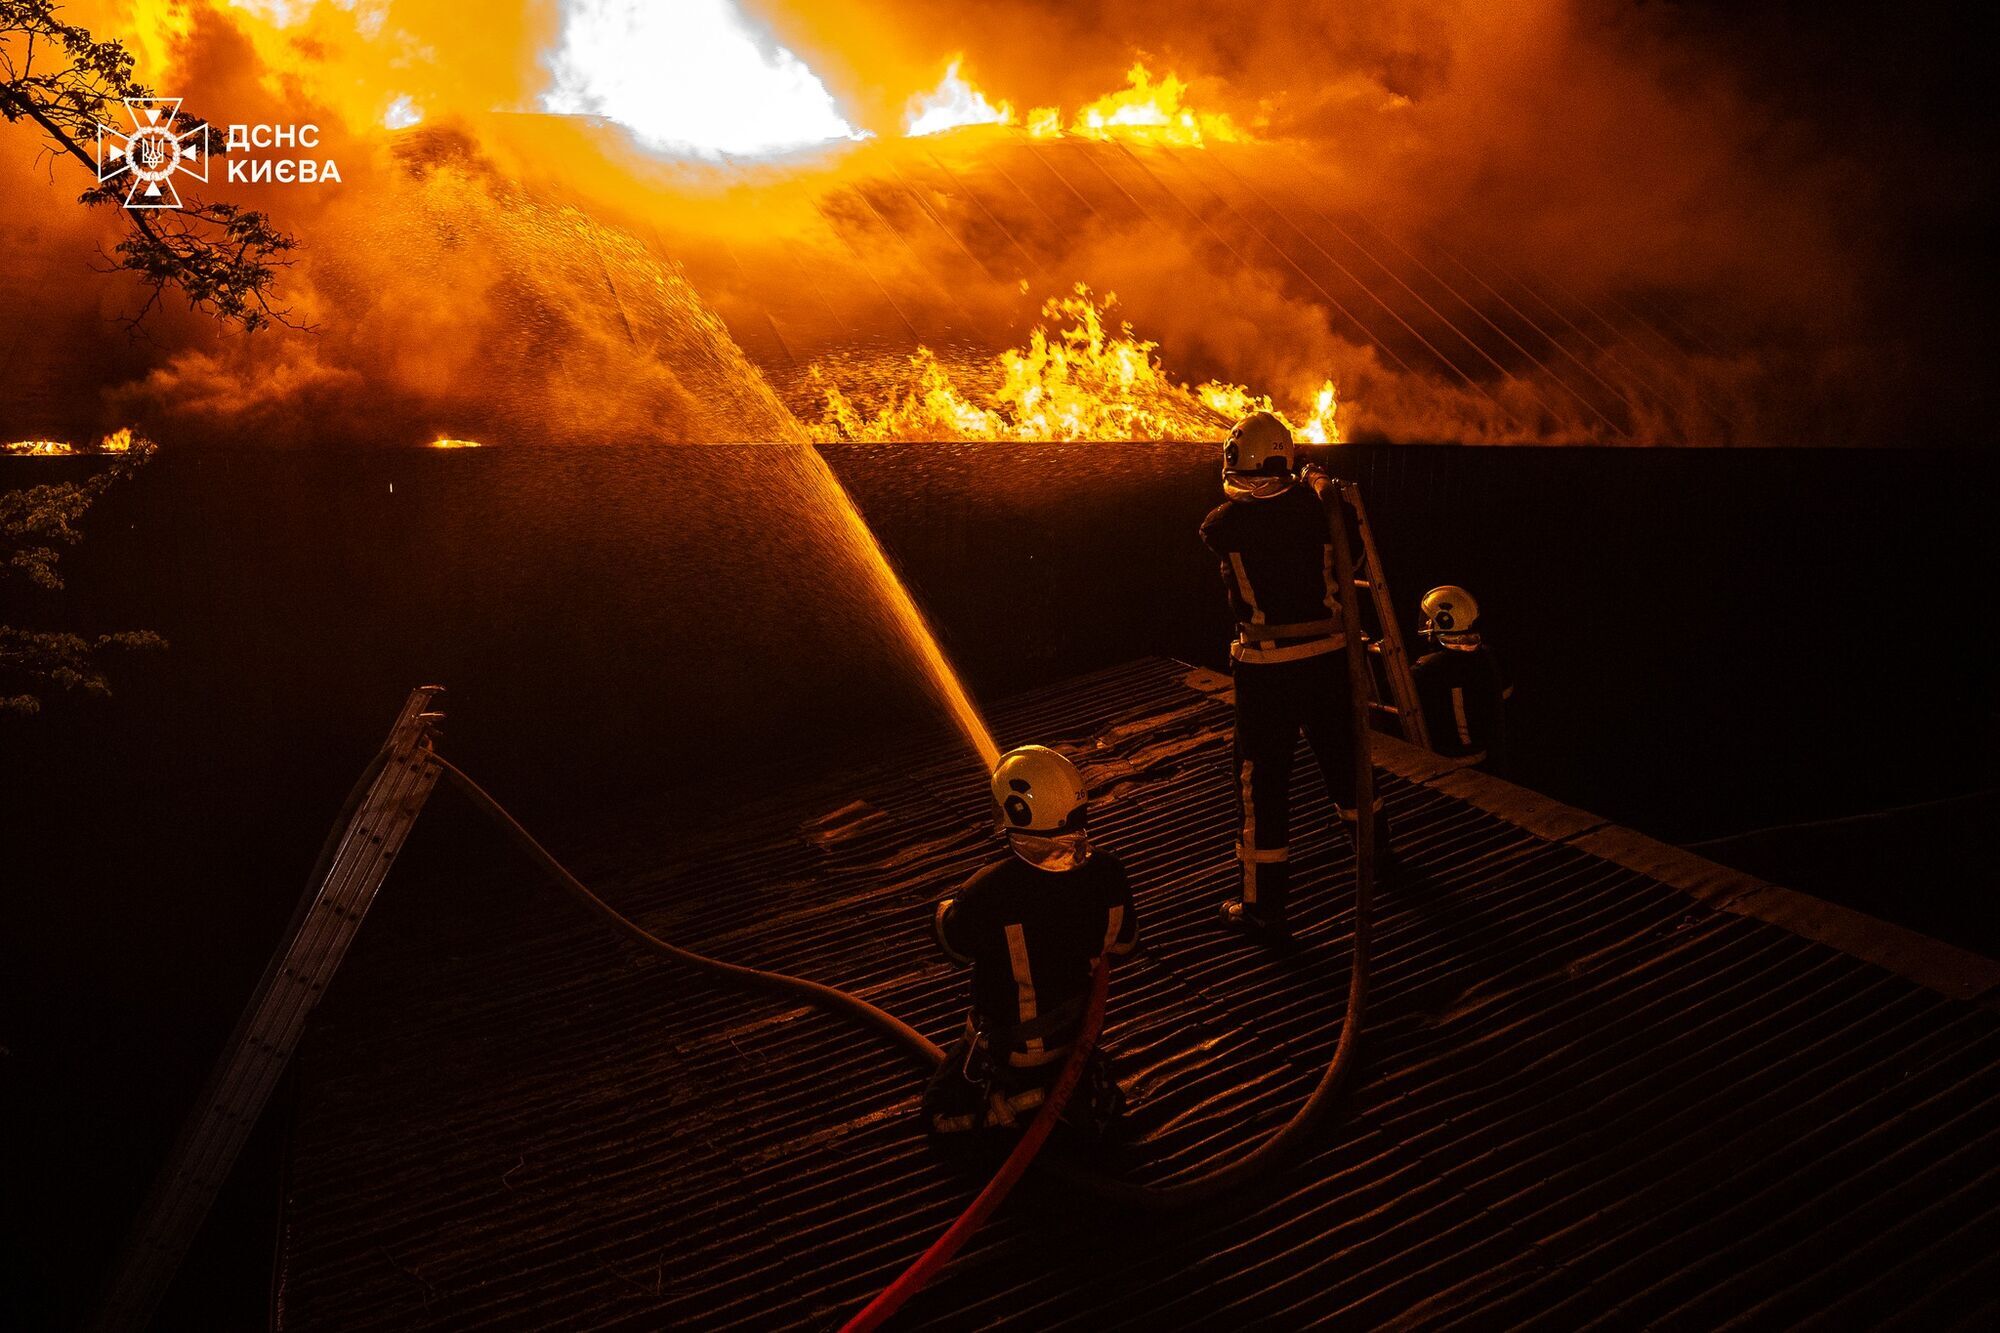 В Киеве более 3 часов тушили пожар в бане на территории ресторанного комплекса. Подробности и видео